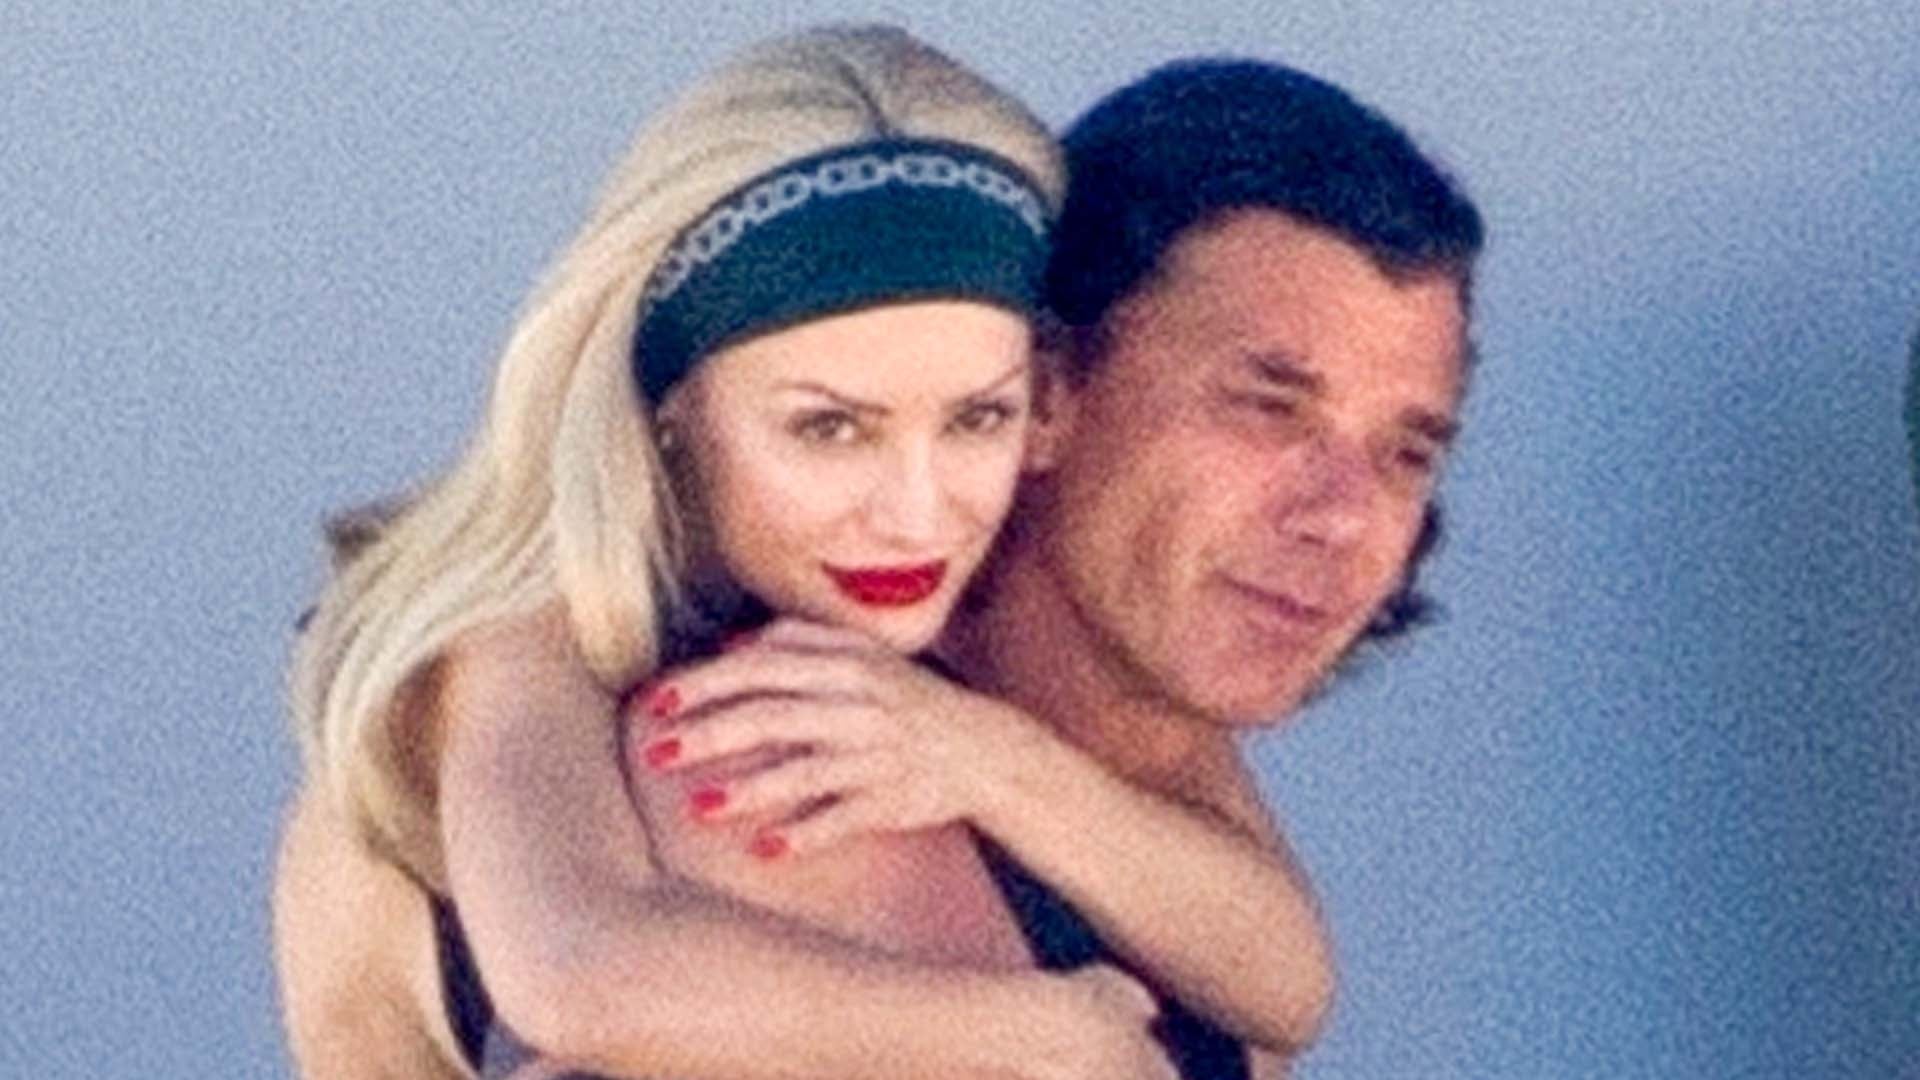 Gavin Rossdale Cuddles Up to Gwen Stefani Lookalike Girlfriend During Beach Getaway